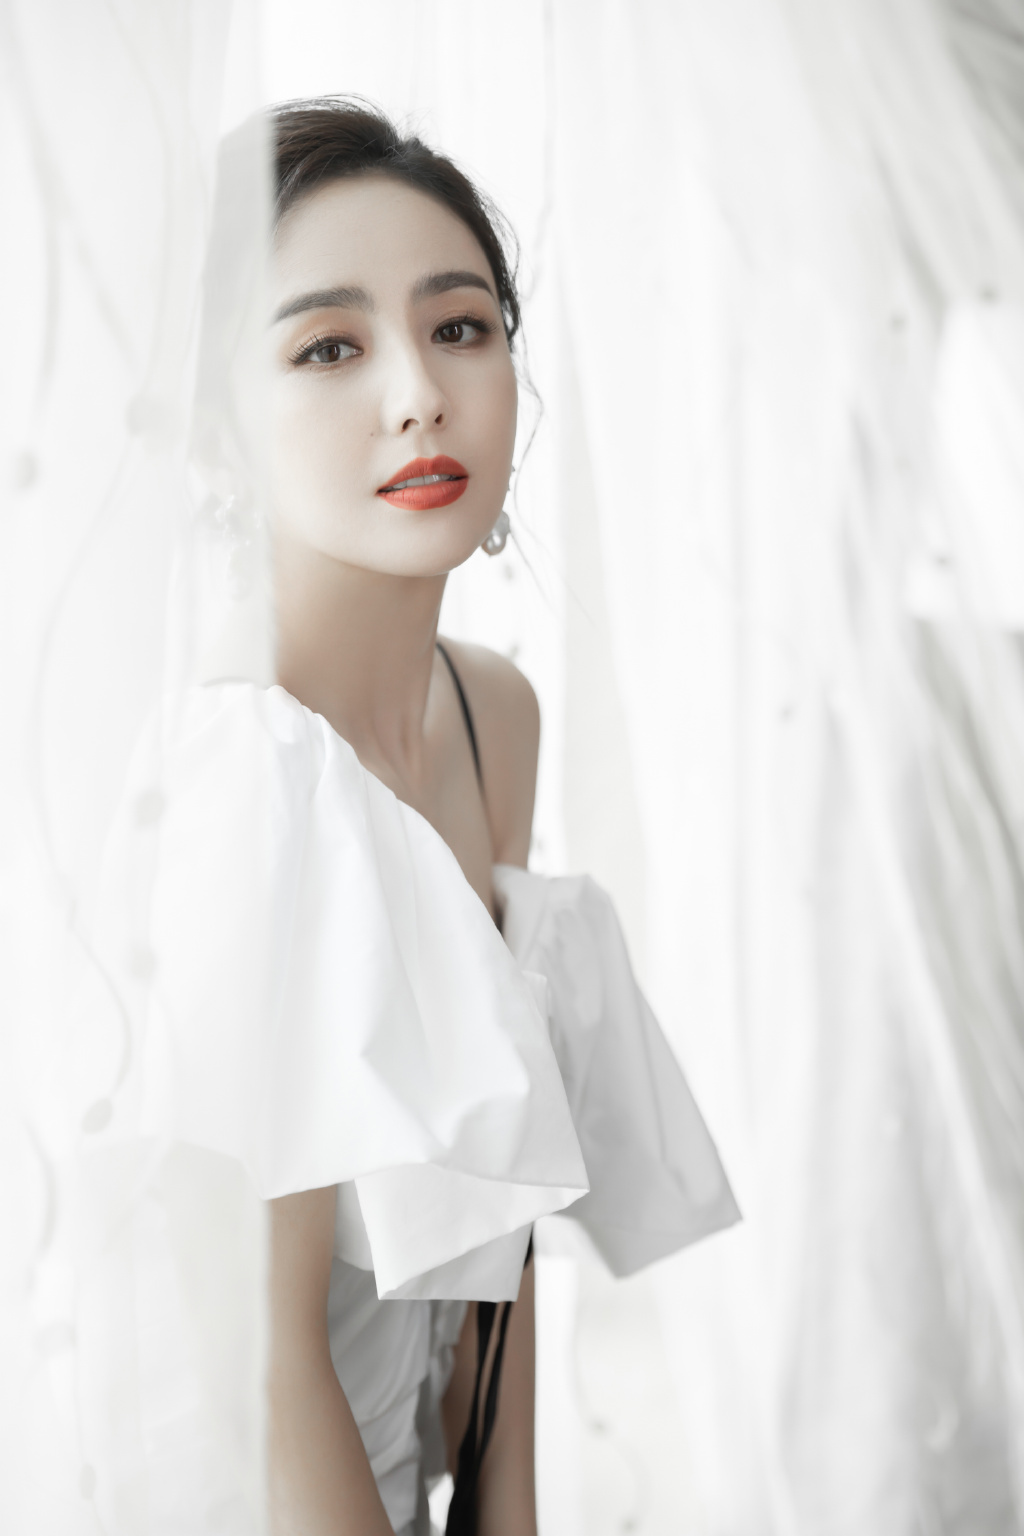 佟丽娅简约时尚纯白蝴蝶结连衣裙穿搭仙气十足写真美照